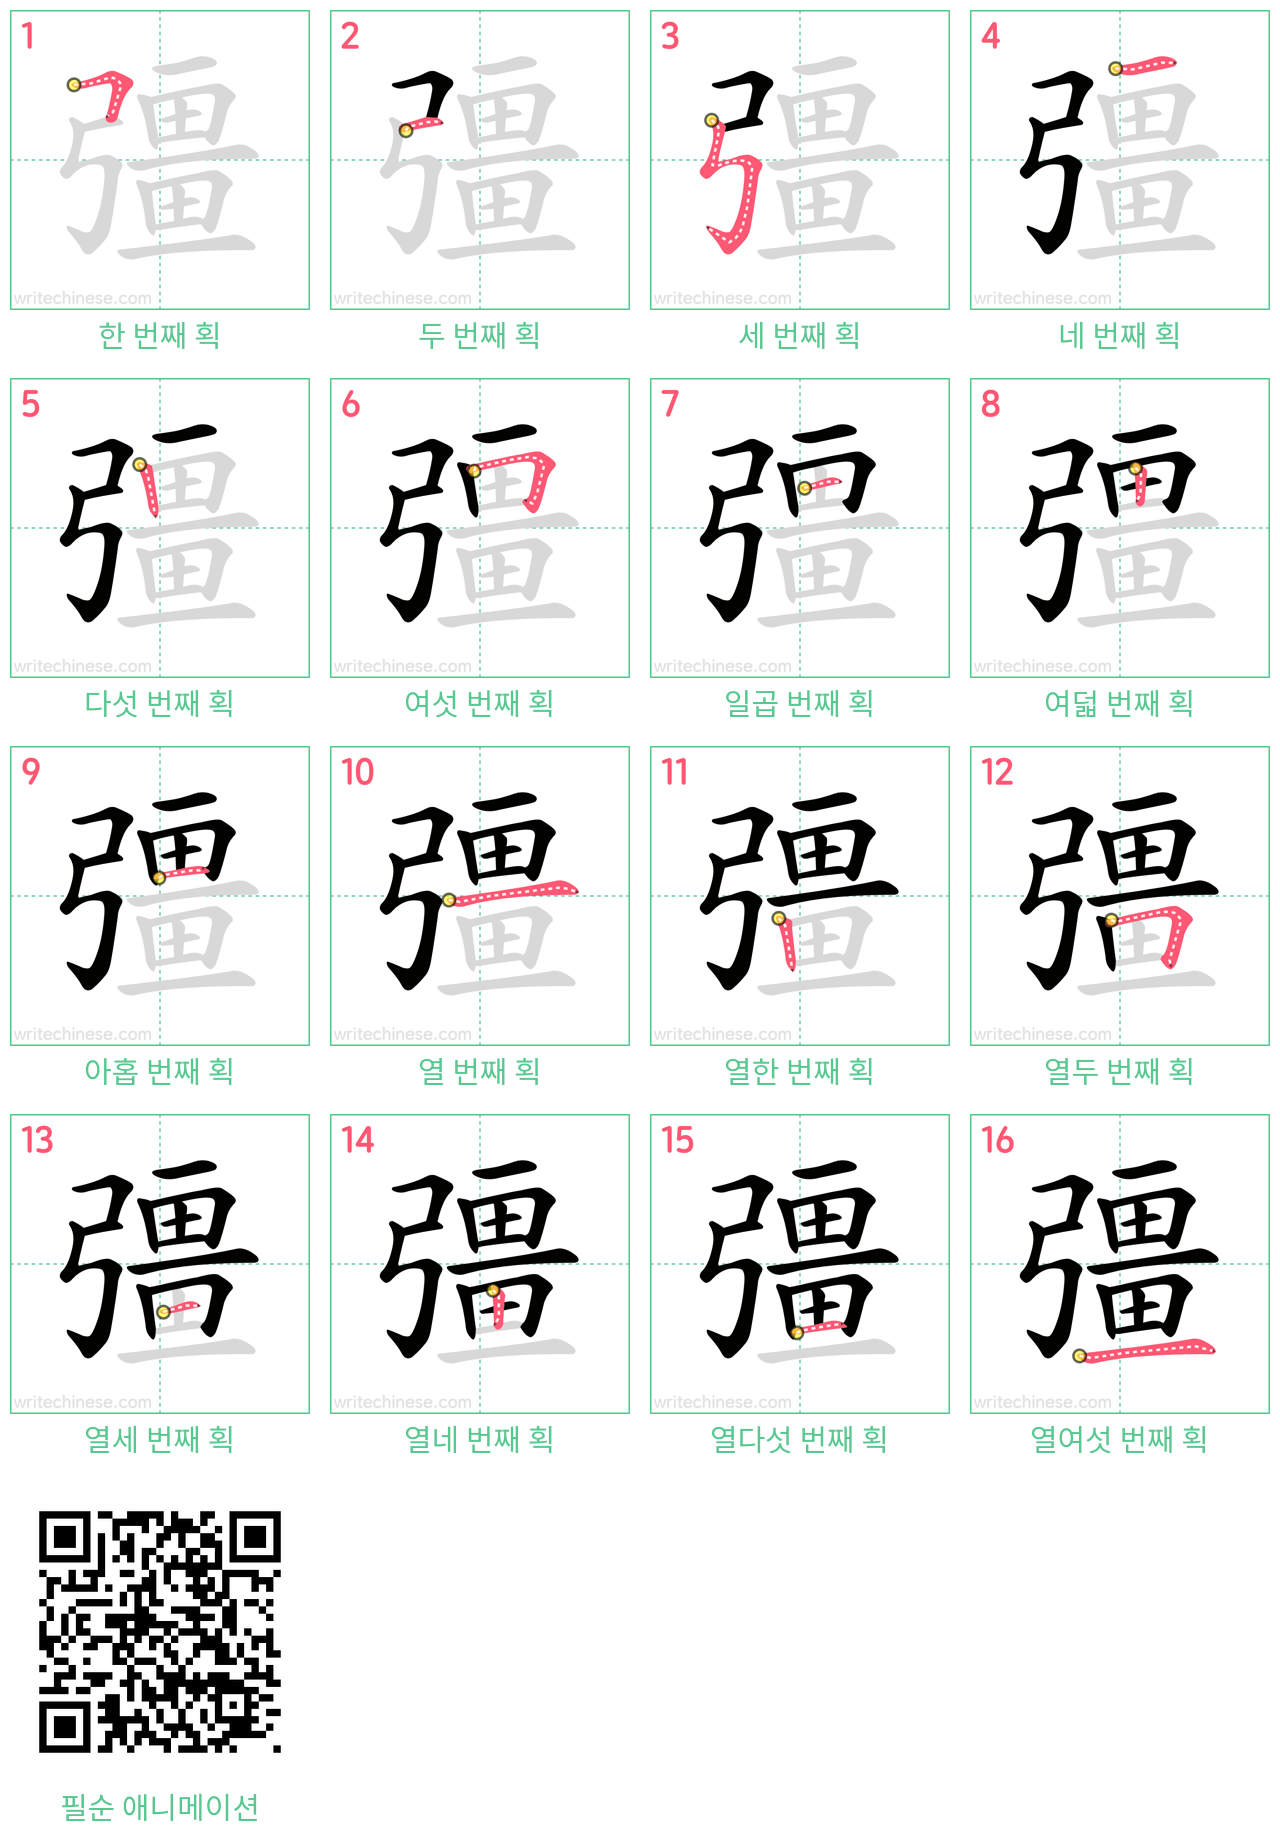 彊 step-by-step stroke order diagrams